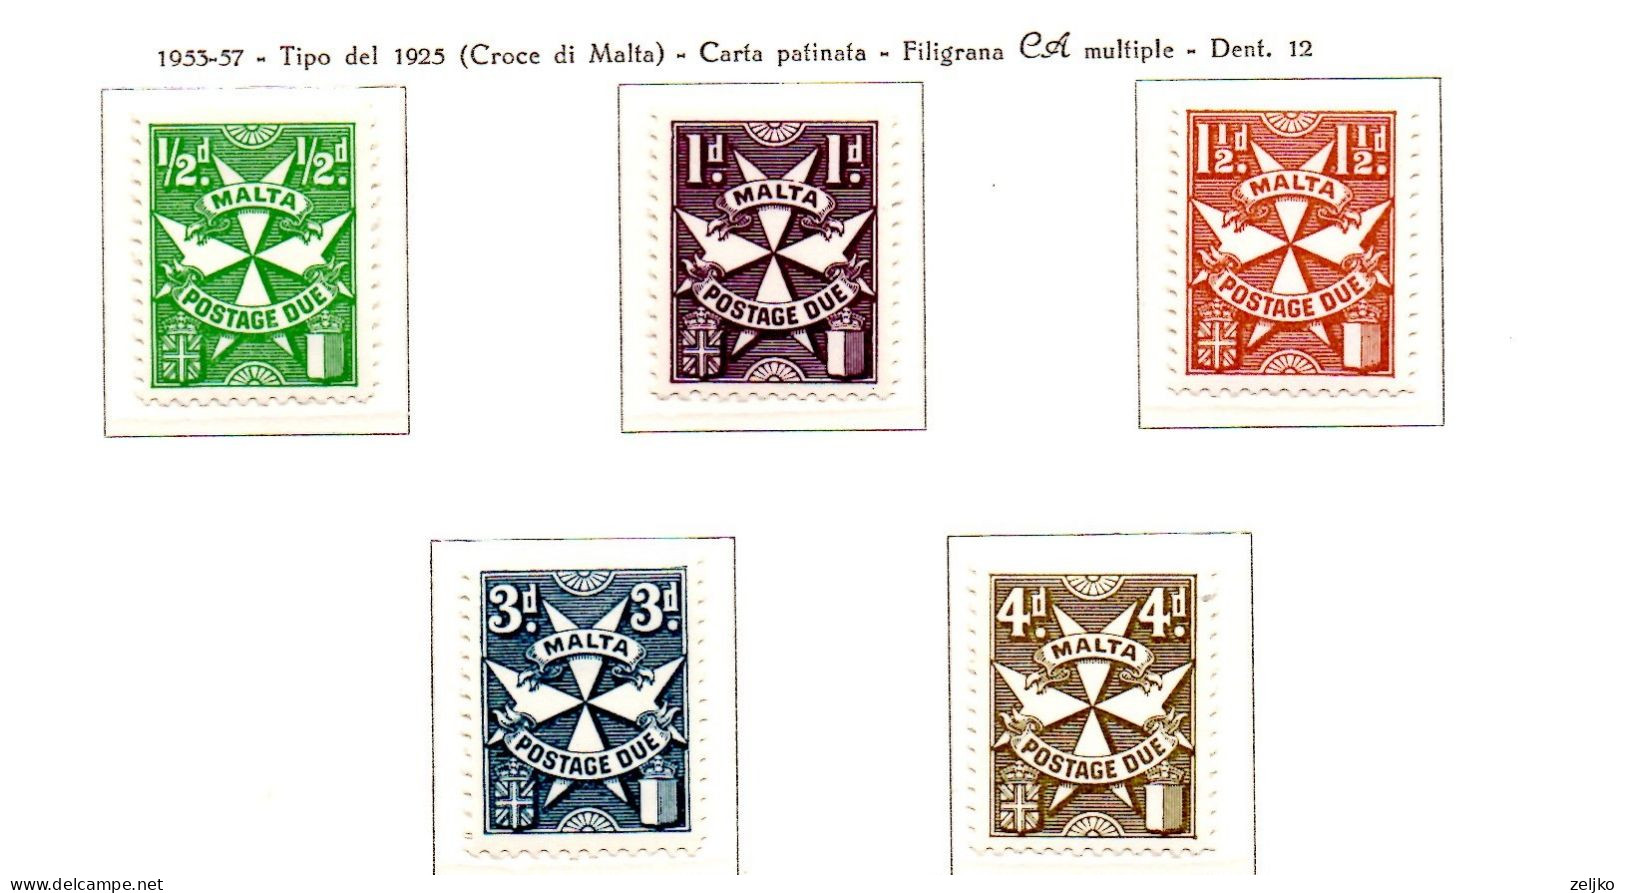 Malta, MNH, Postage Due, 1953, Michel 21- 25 - Malte